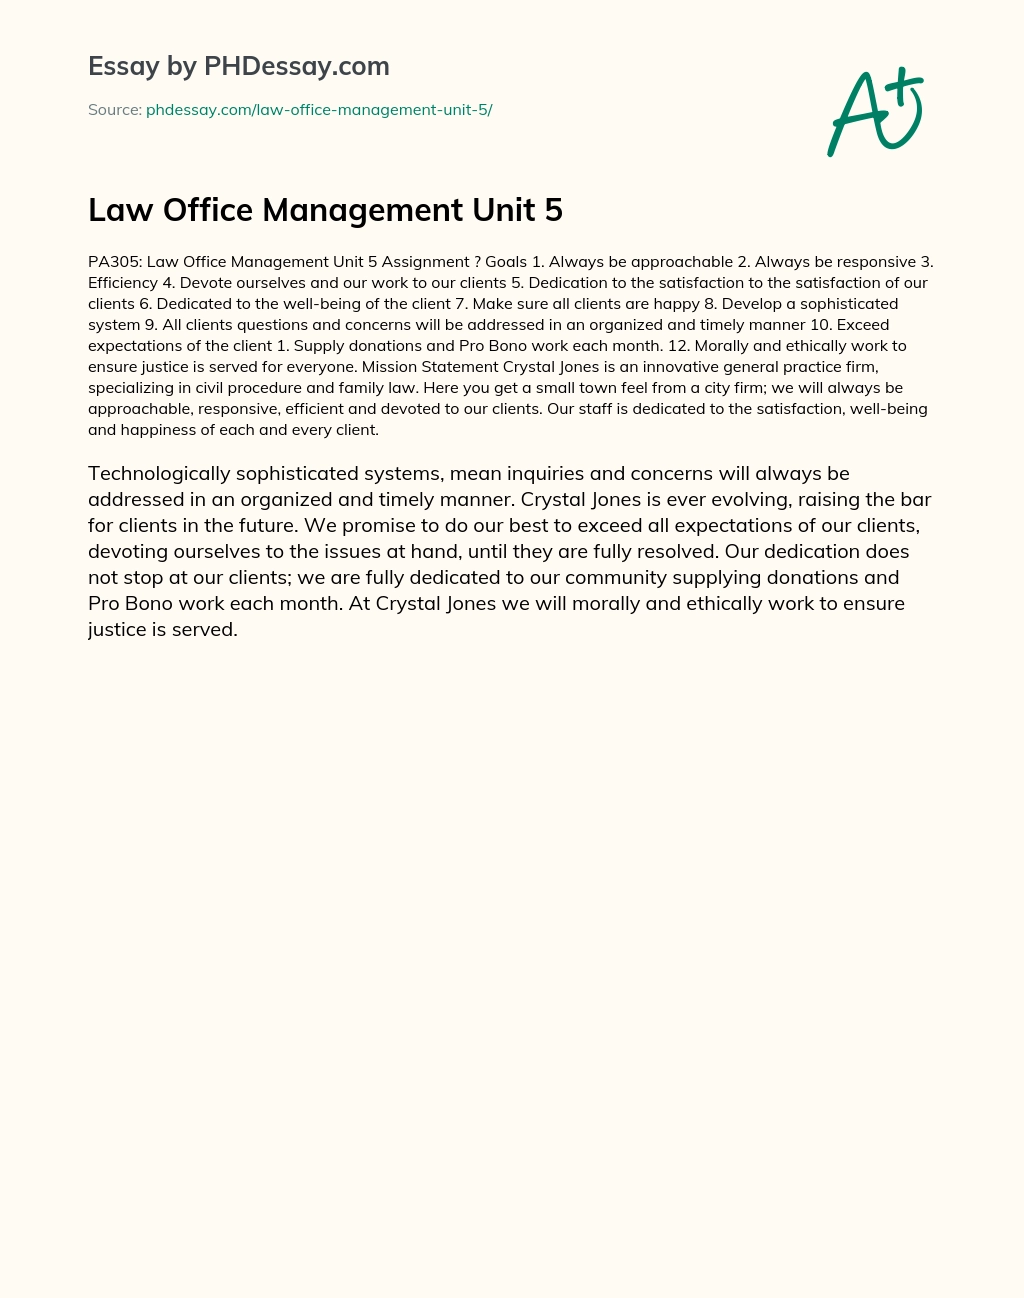 Law Office Management Unit 5 essay